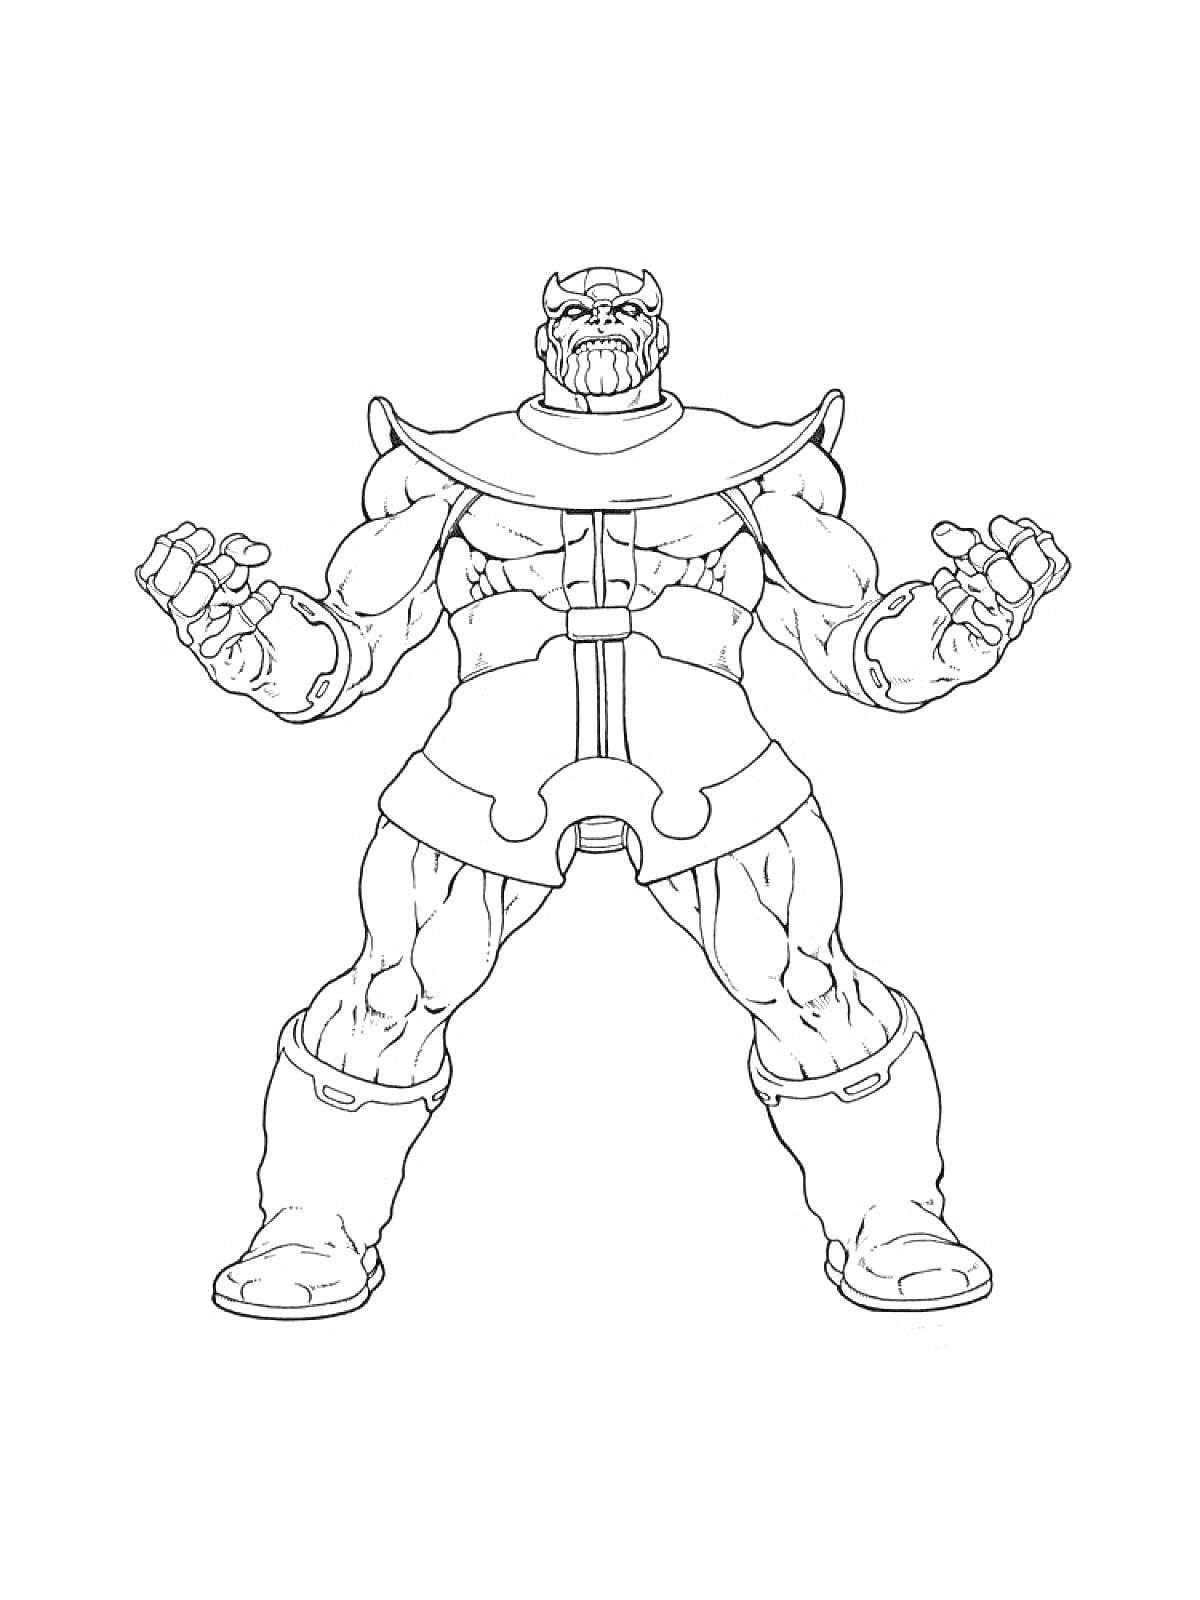 Танос - фигура с поднятыми кулаками